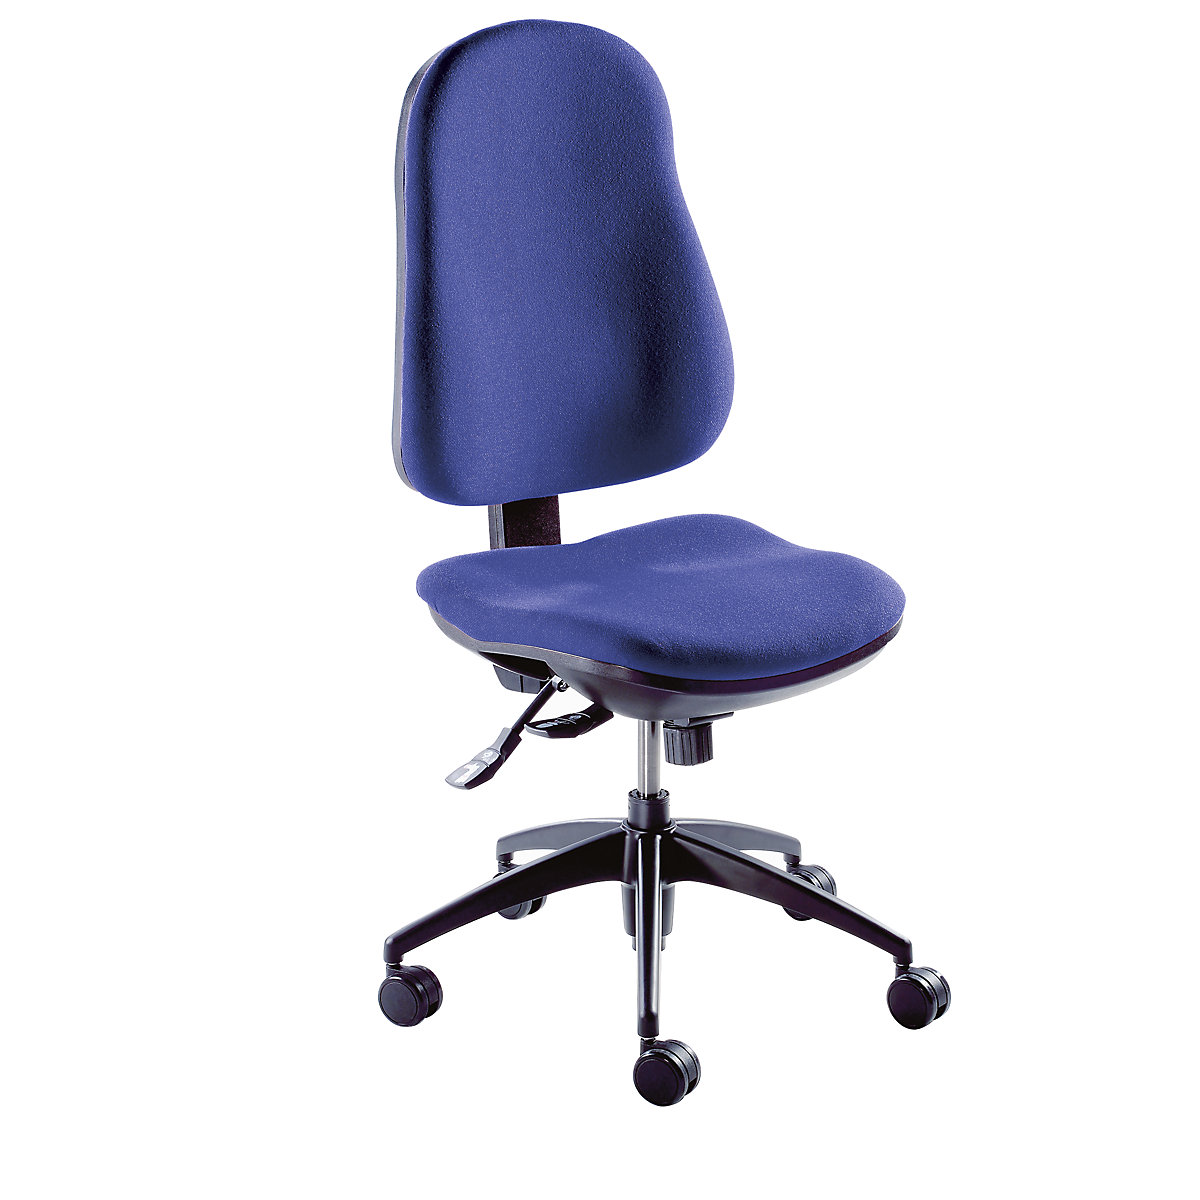 Chaise pivotante ergonomique – eurokraft pro, mécanisme synchrone, sans accoudoirs, habillage bleu-4